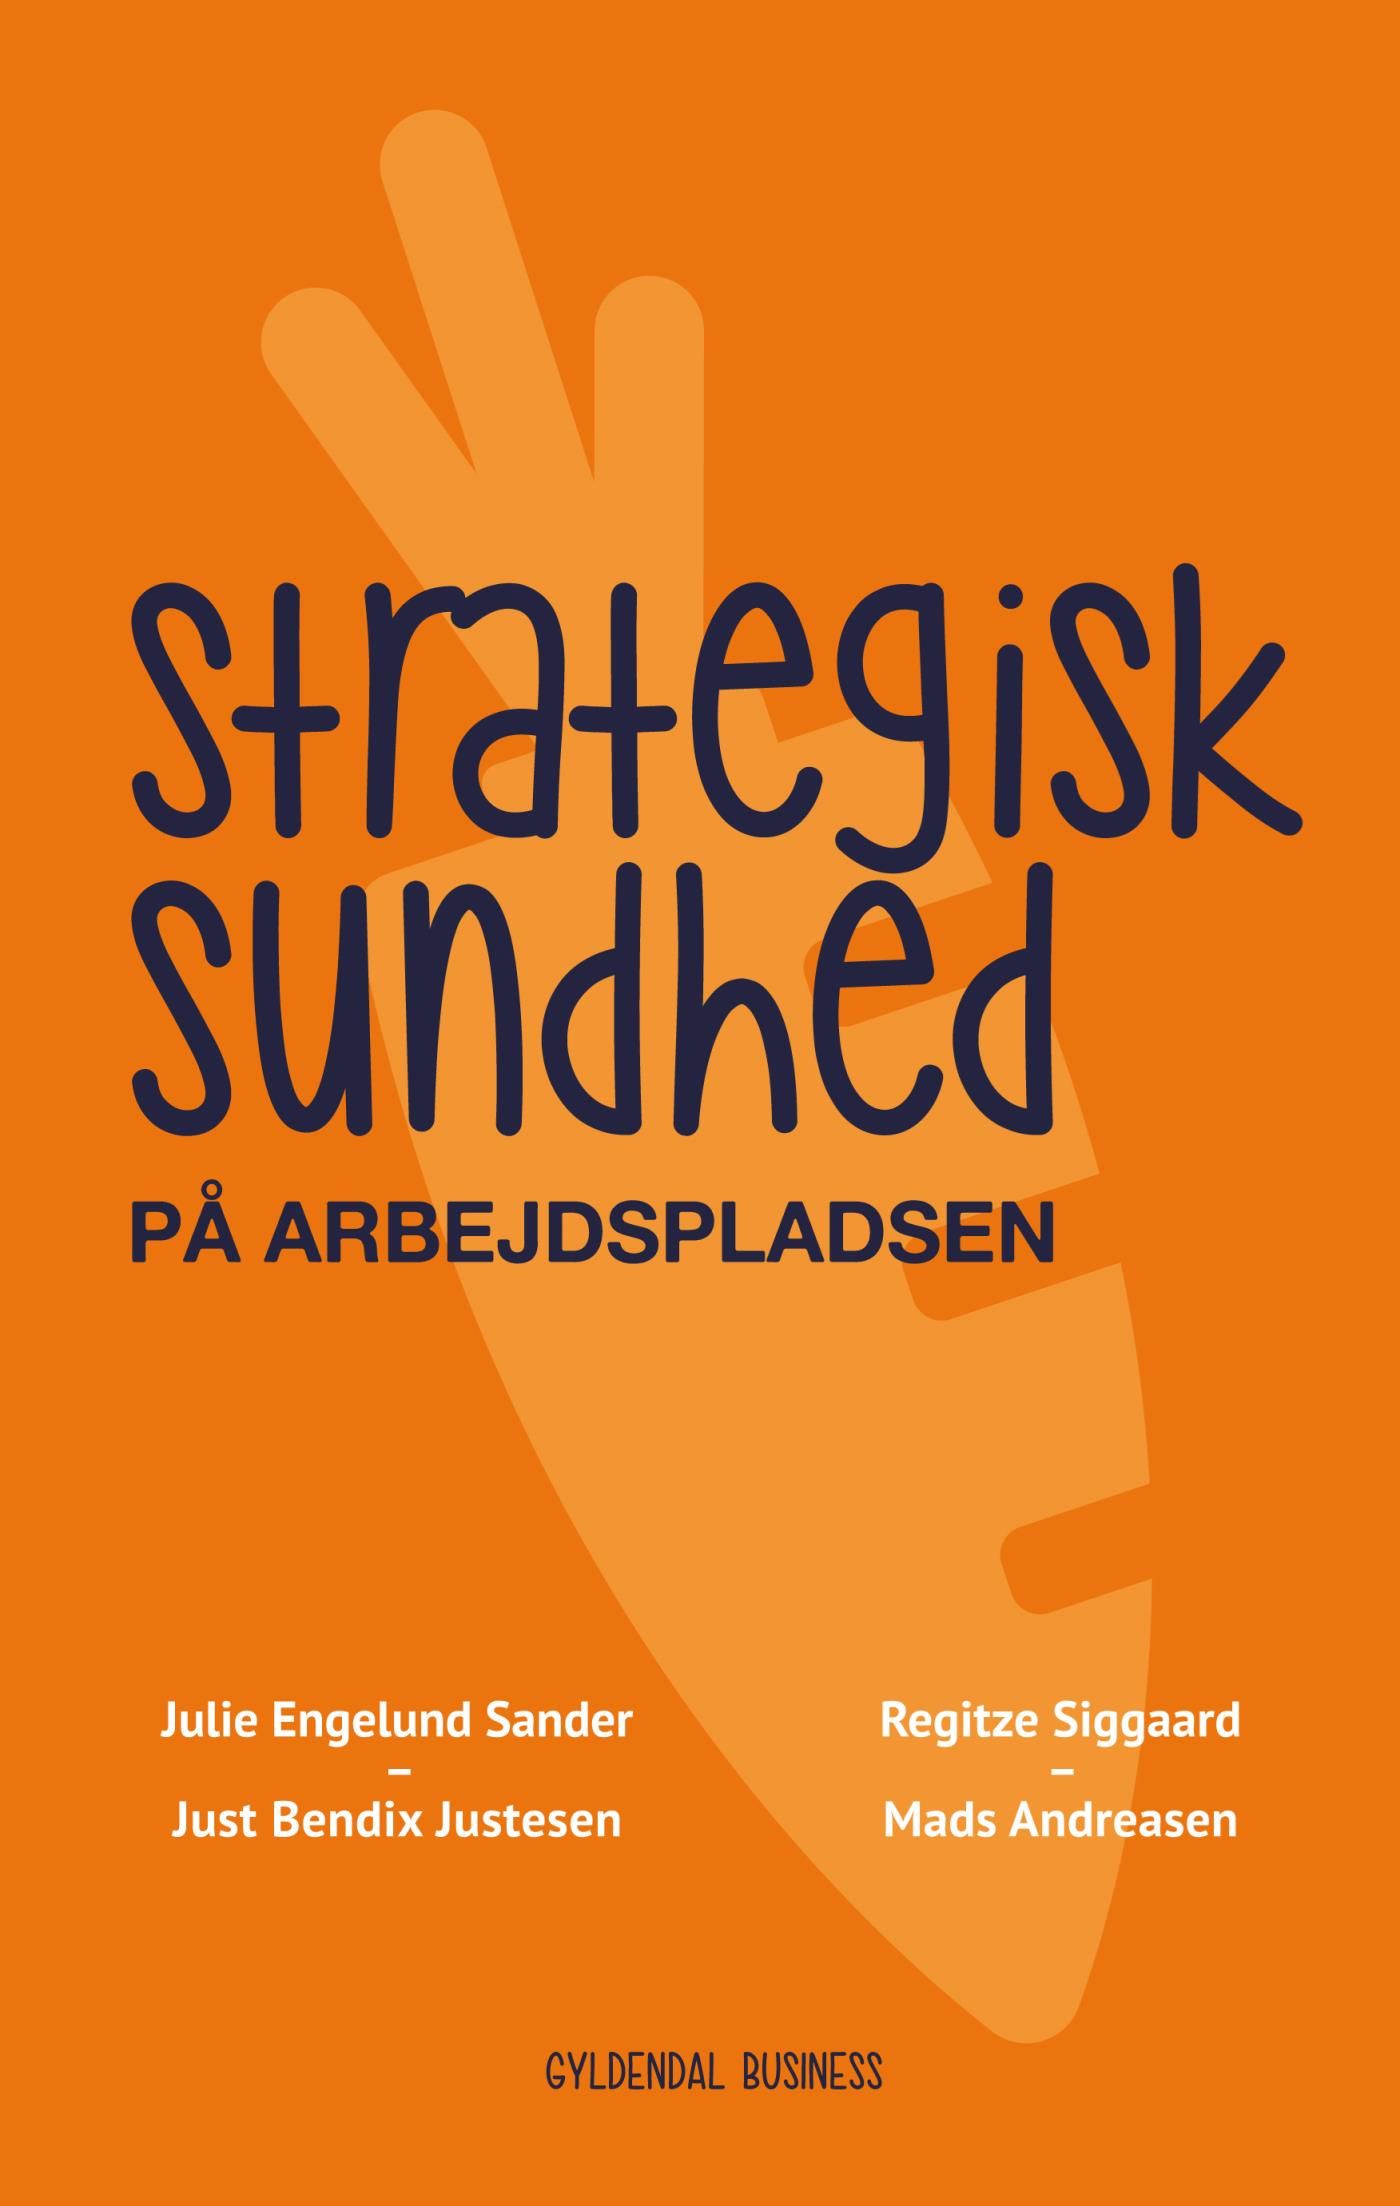 Strategisk sundhed på arbejdspladsen, eBook by Mads Andreasen, Just Bendix Justesen, Julie Engelund Sander, Regitze Siggaard